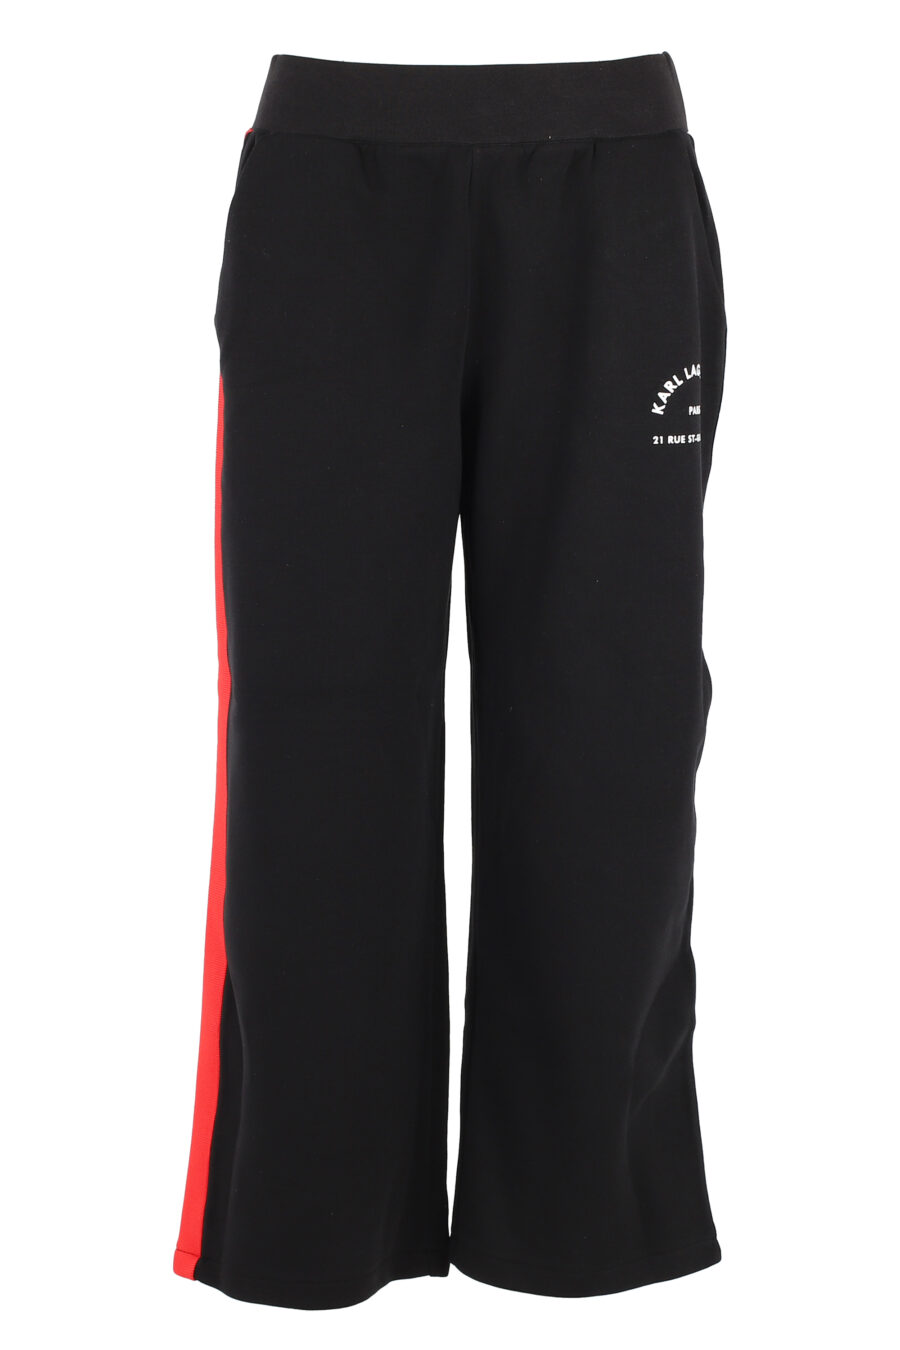 Pantalón de chándal negro con lineas multicolor lateral - IMG 5050